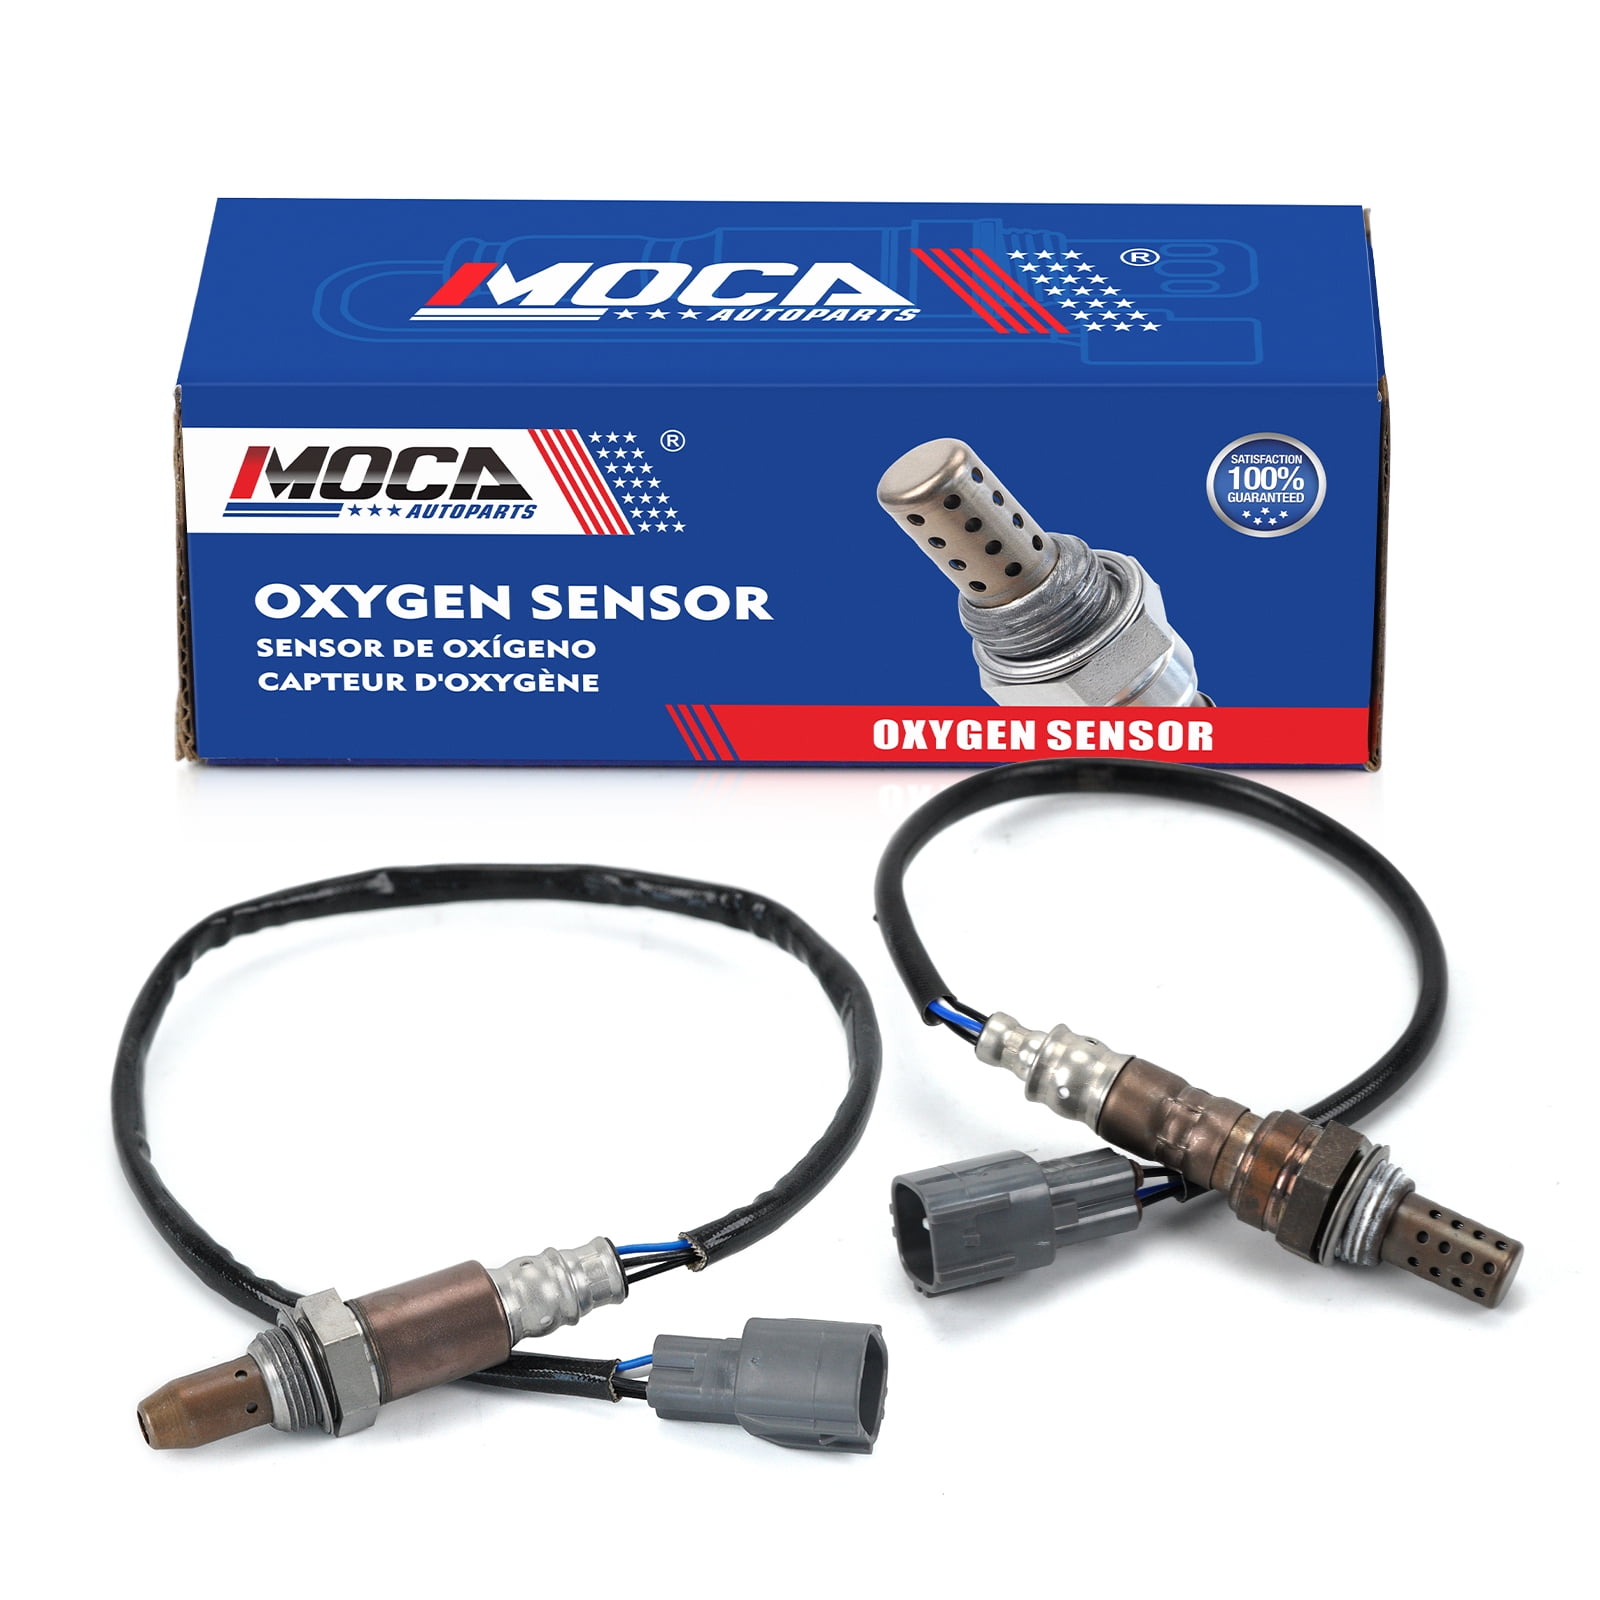 Downstream O2 Oxygen Sensor Kit - 4 Piece - 4 Wire - 16.5 Inch